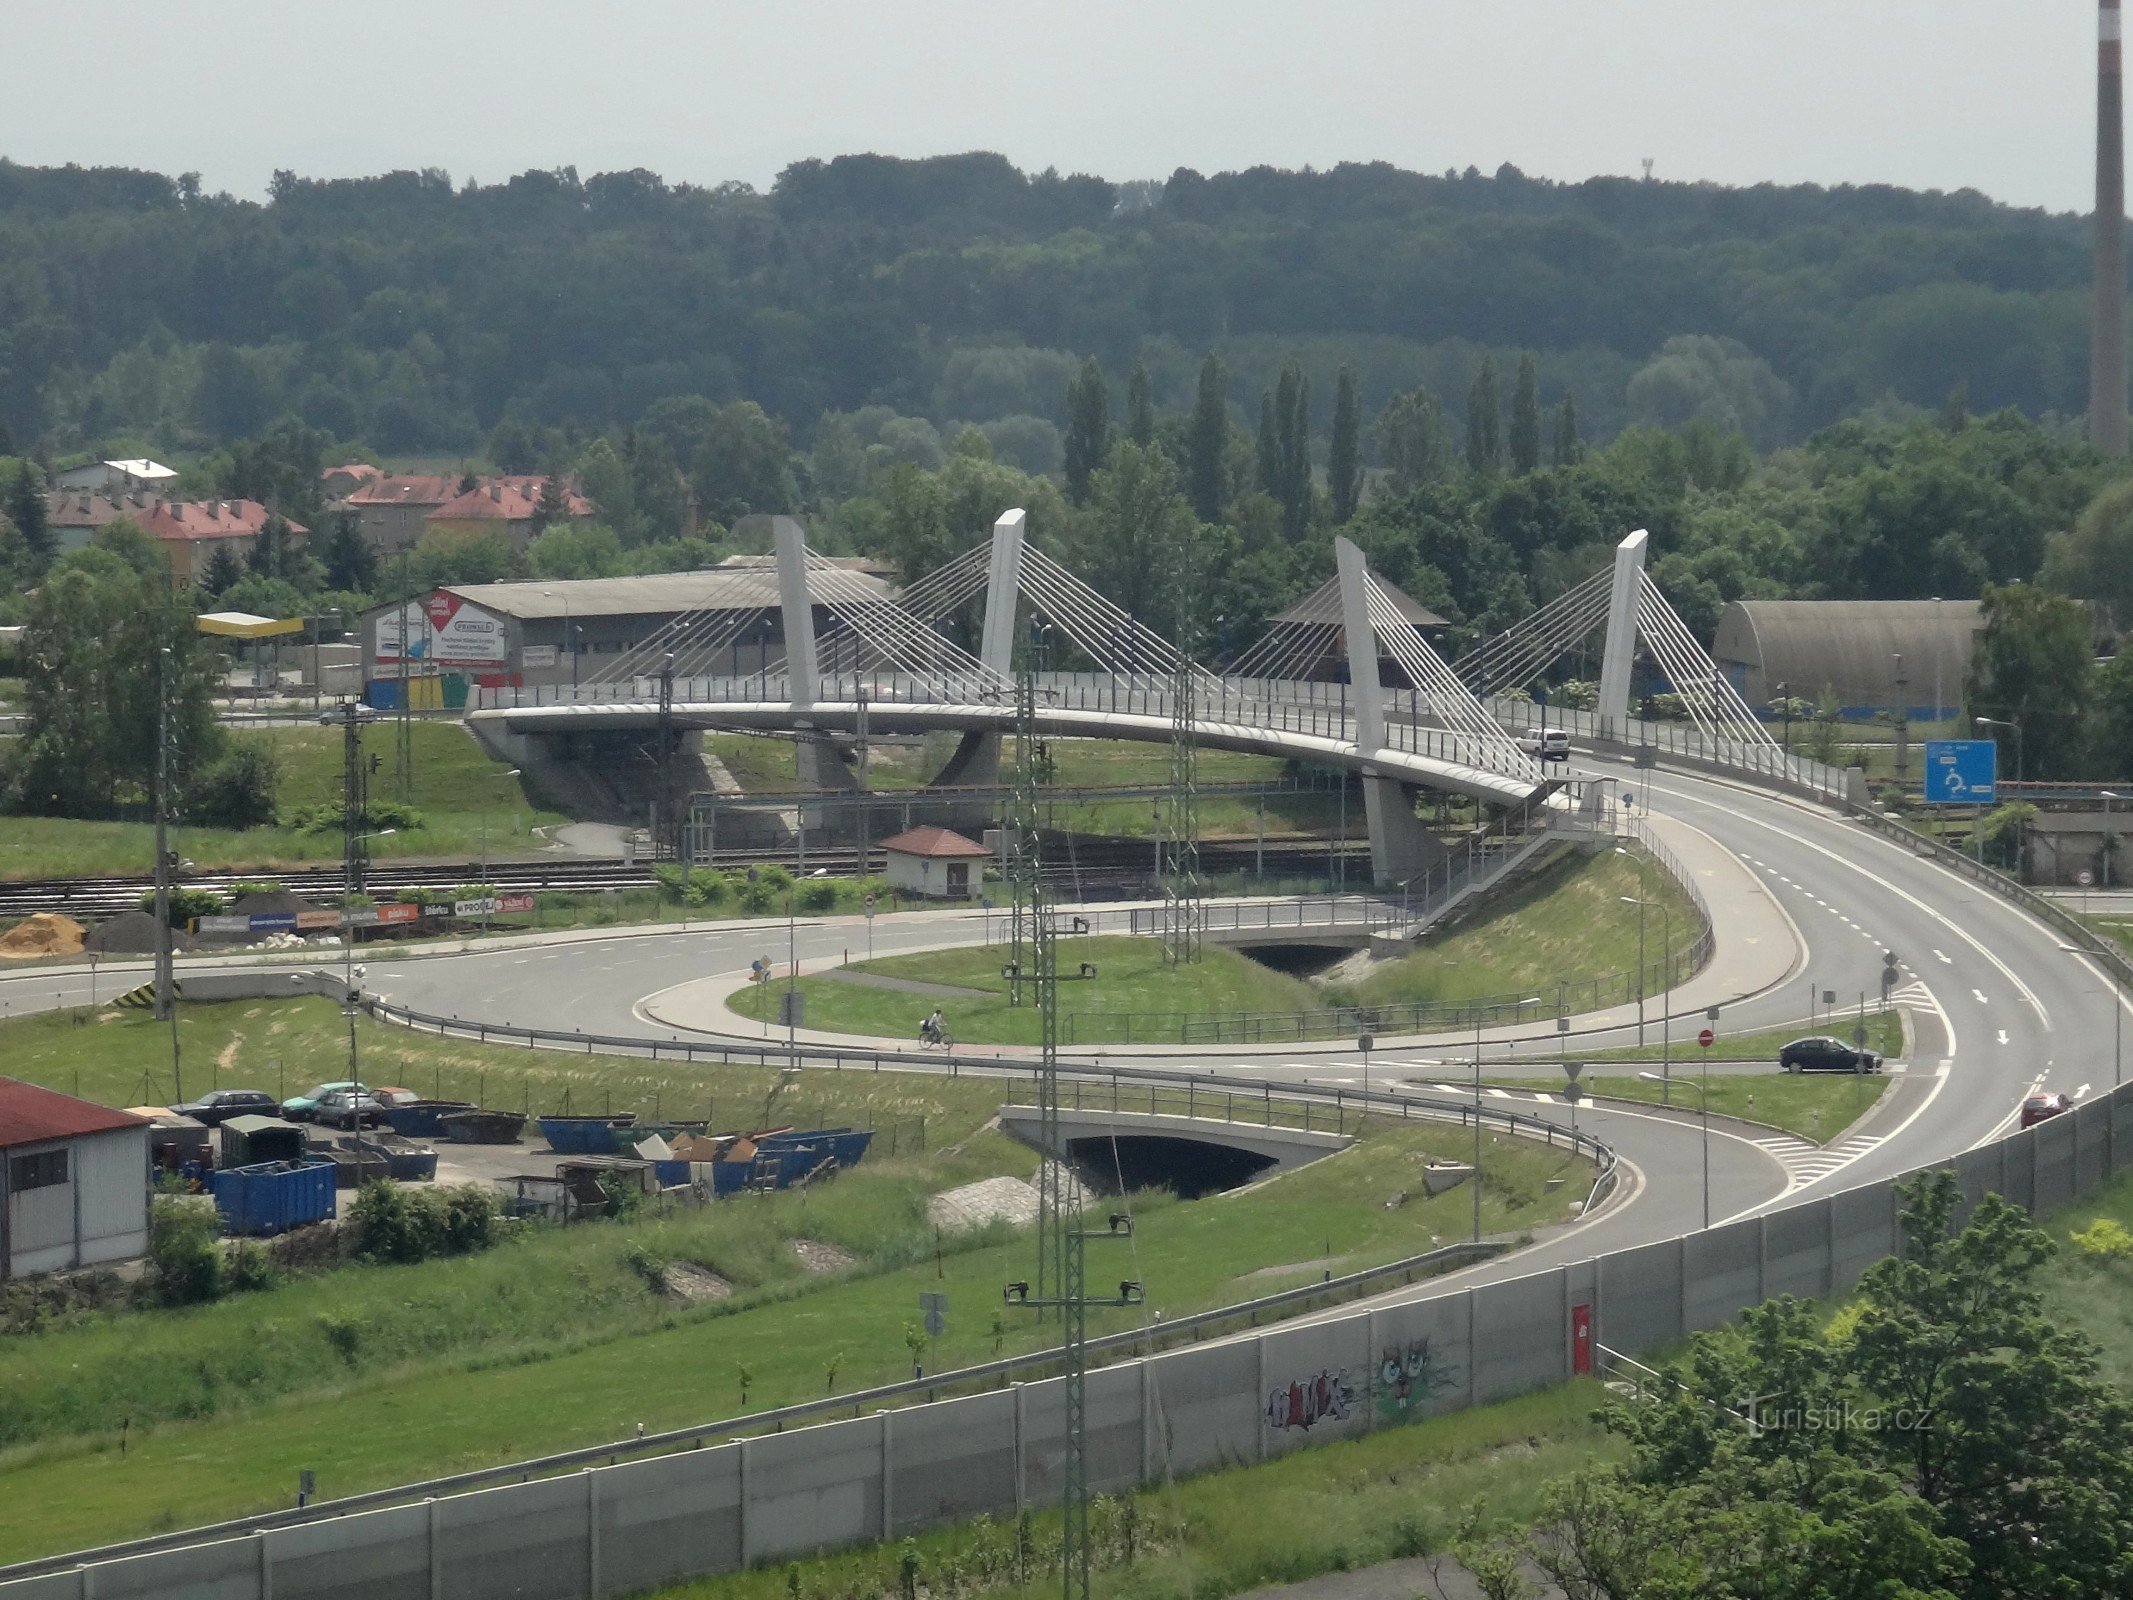 Vedere Bohumín din turnul de pe podul peste calea ferată, care leagă Nový Bohumín și Bohumín-Skřečoň